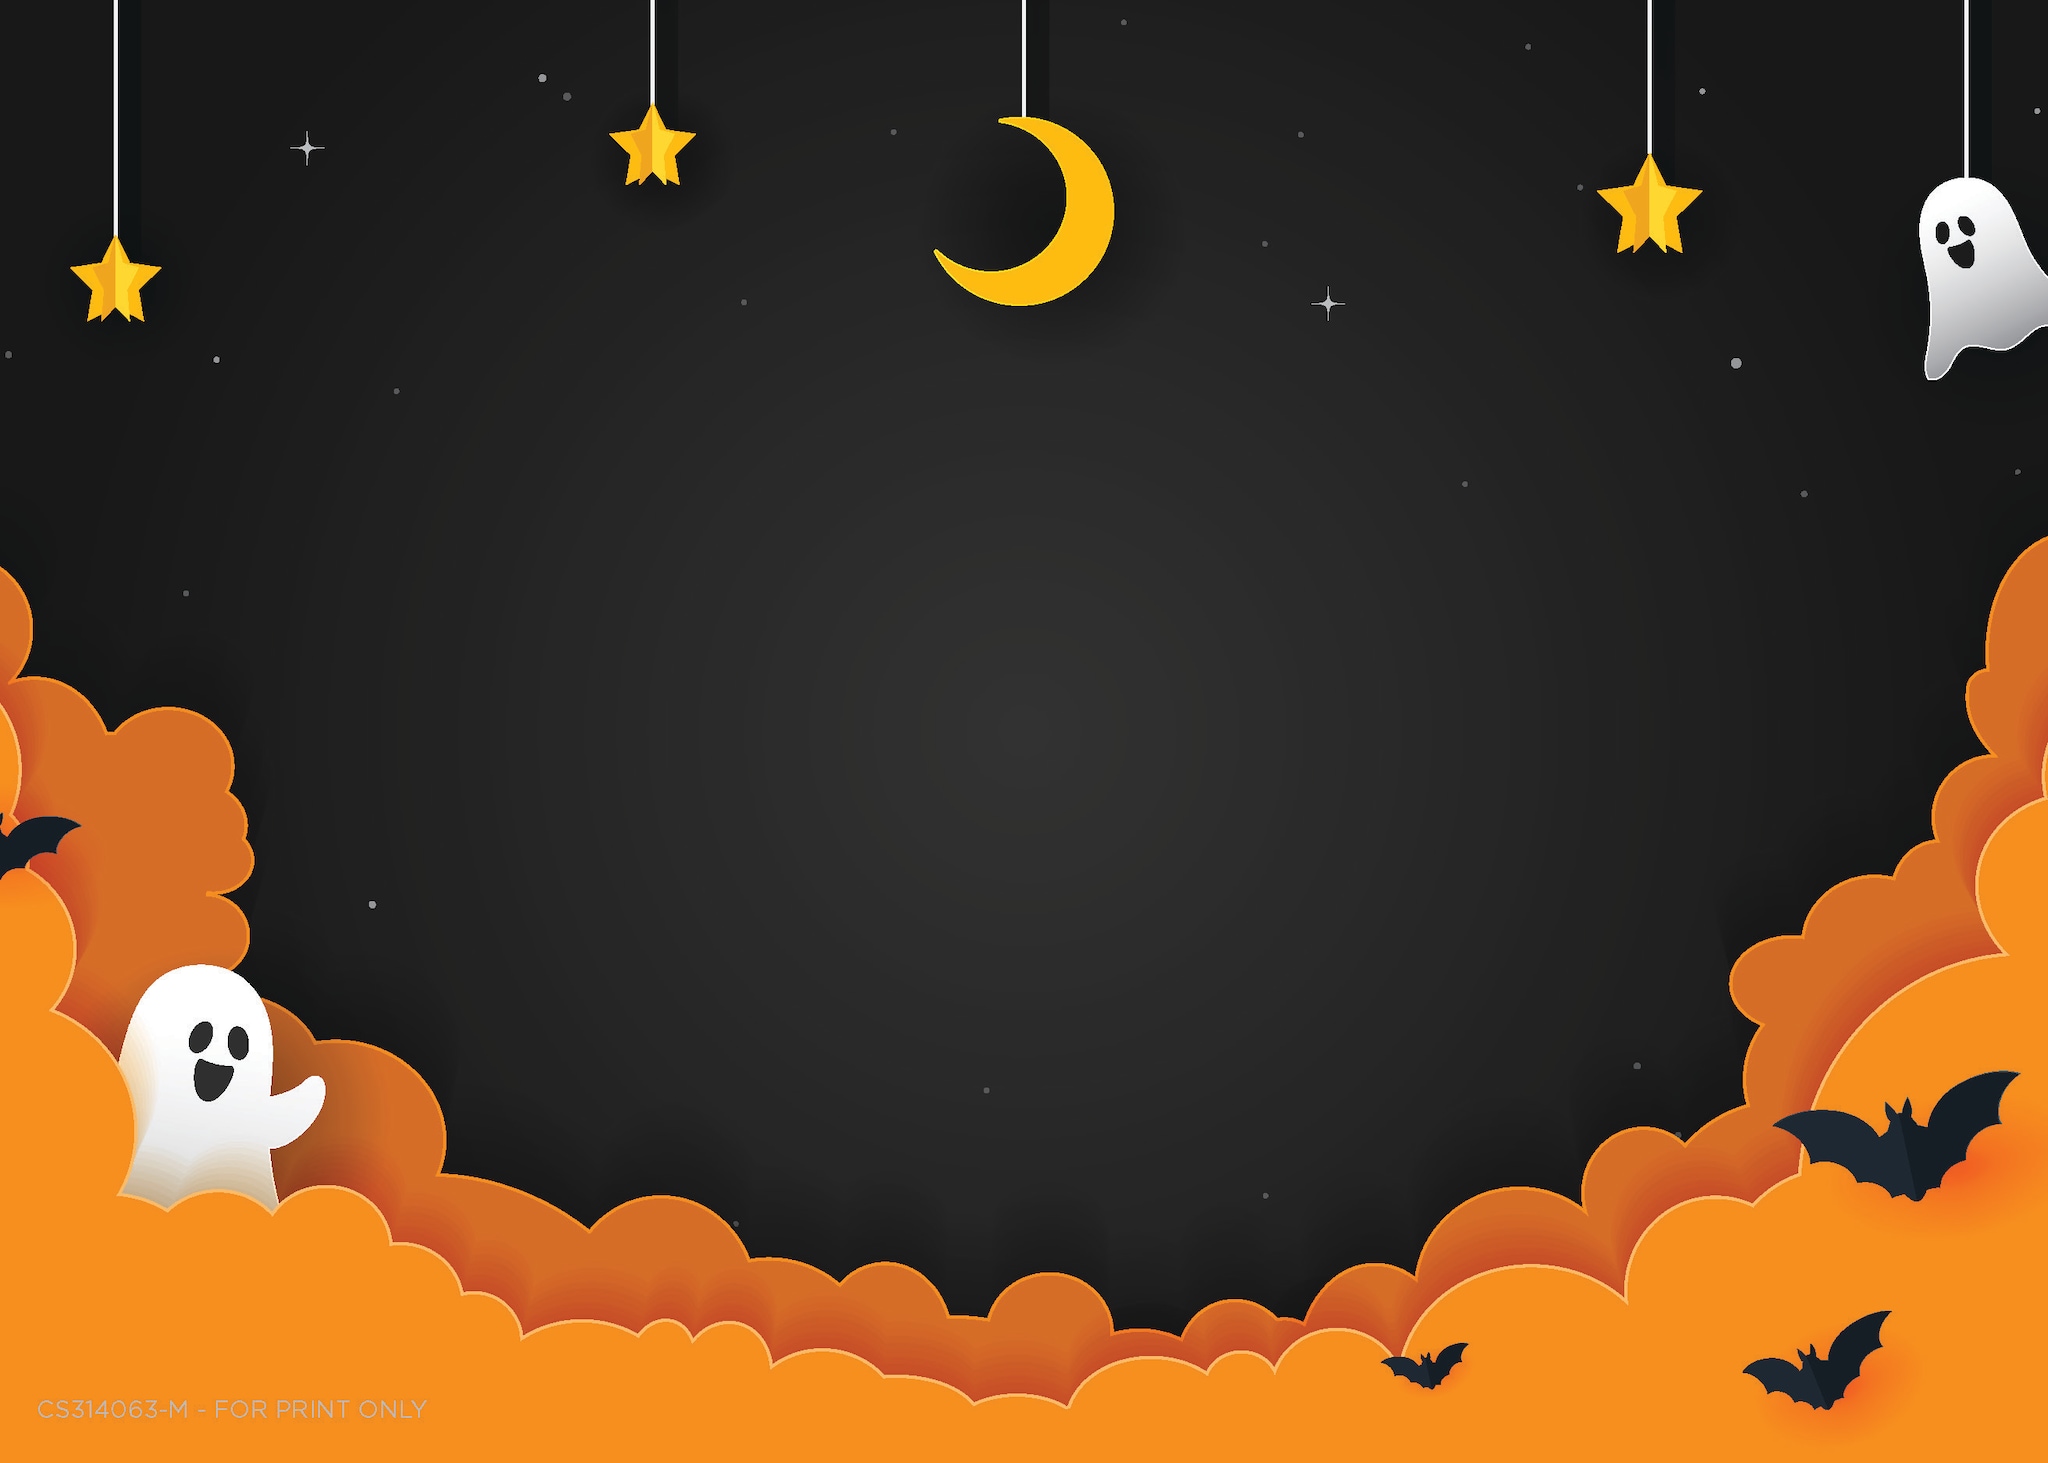 Un postal de Halloween con dibujos animados de fantasmas, murciélagos, estrellas, y una luna.